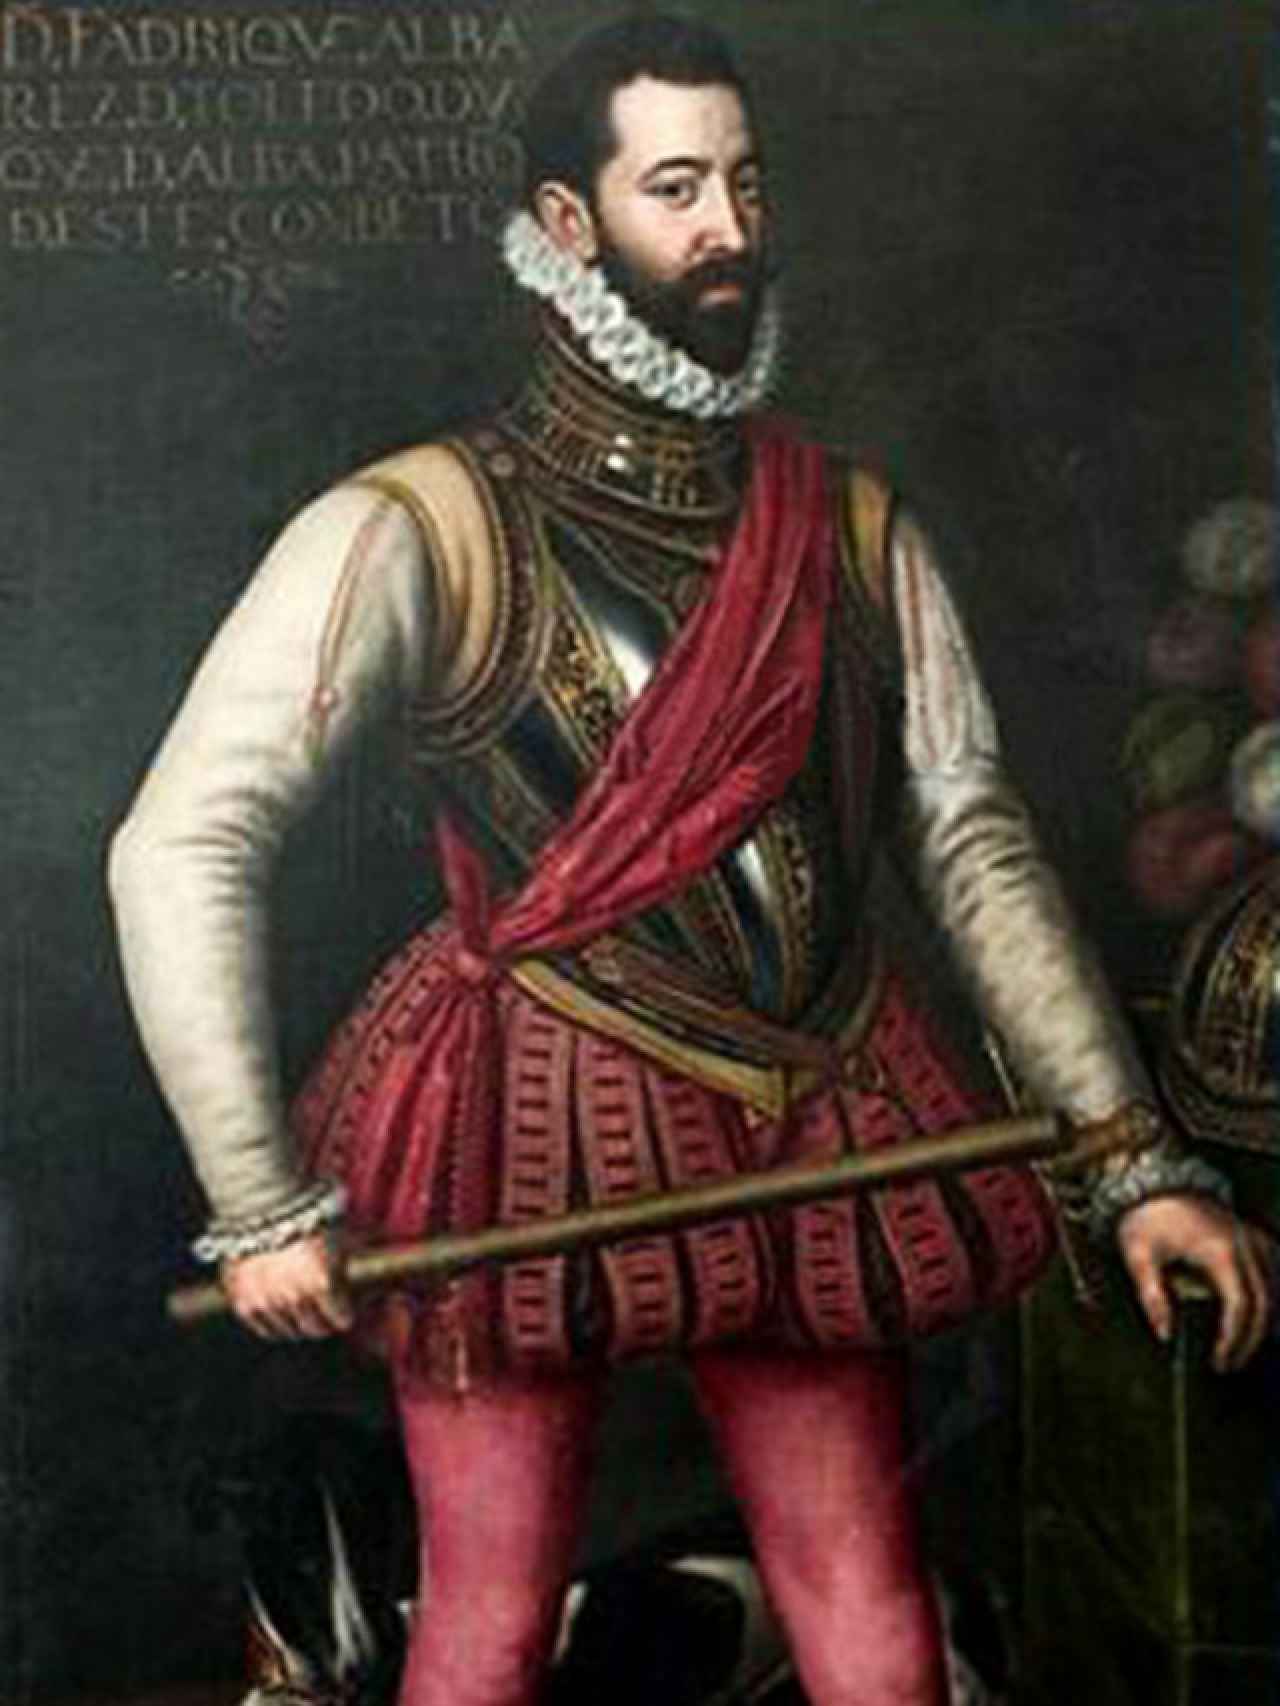 Fadrique Álvarez de Toledo.